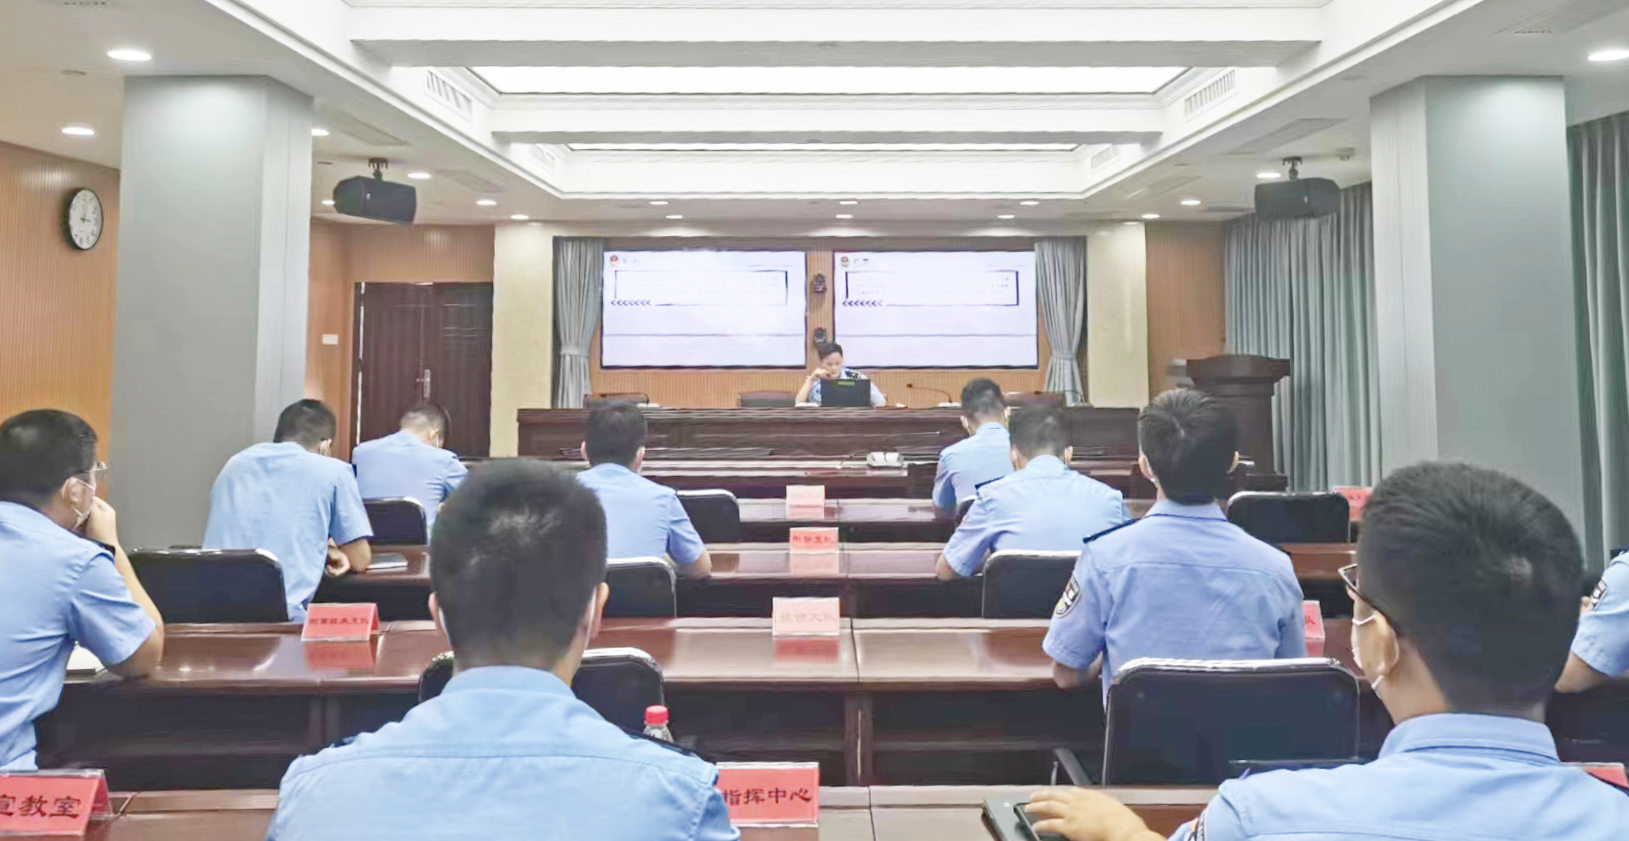 深圳铁路公安处组织开展枪支安全教育培训 